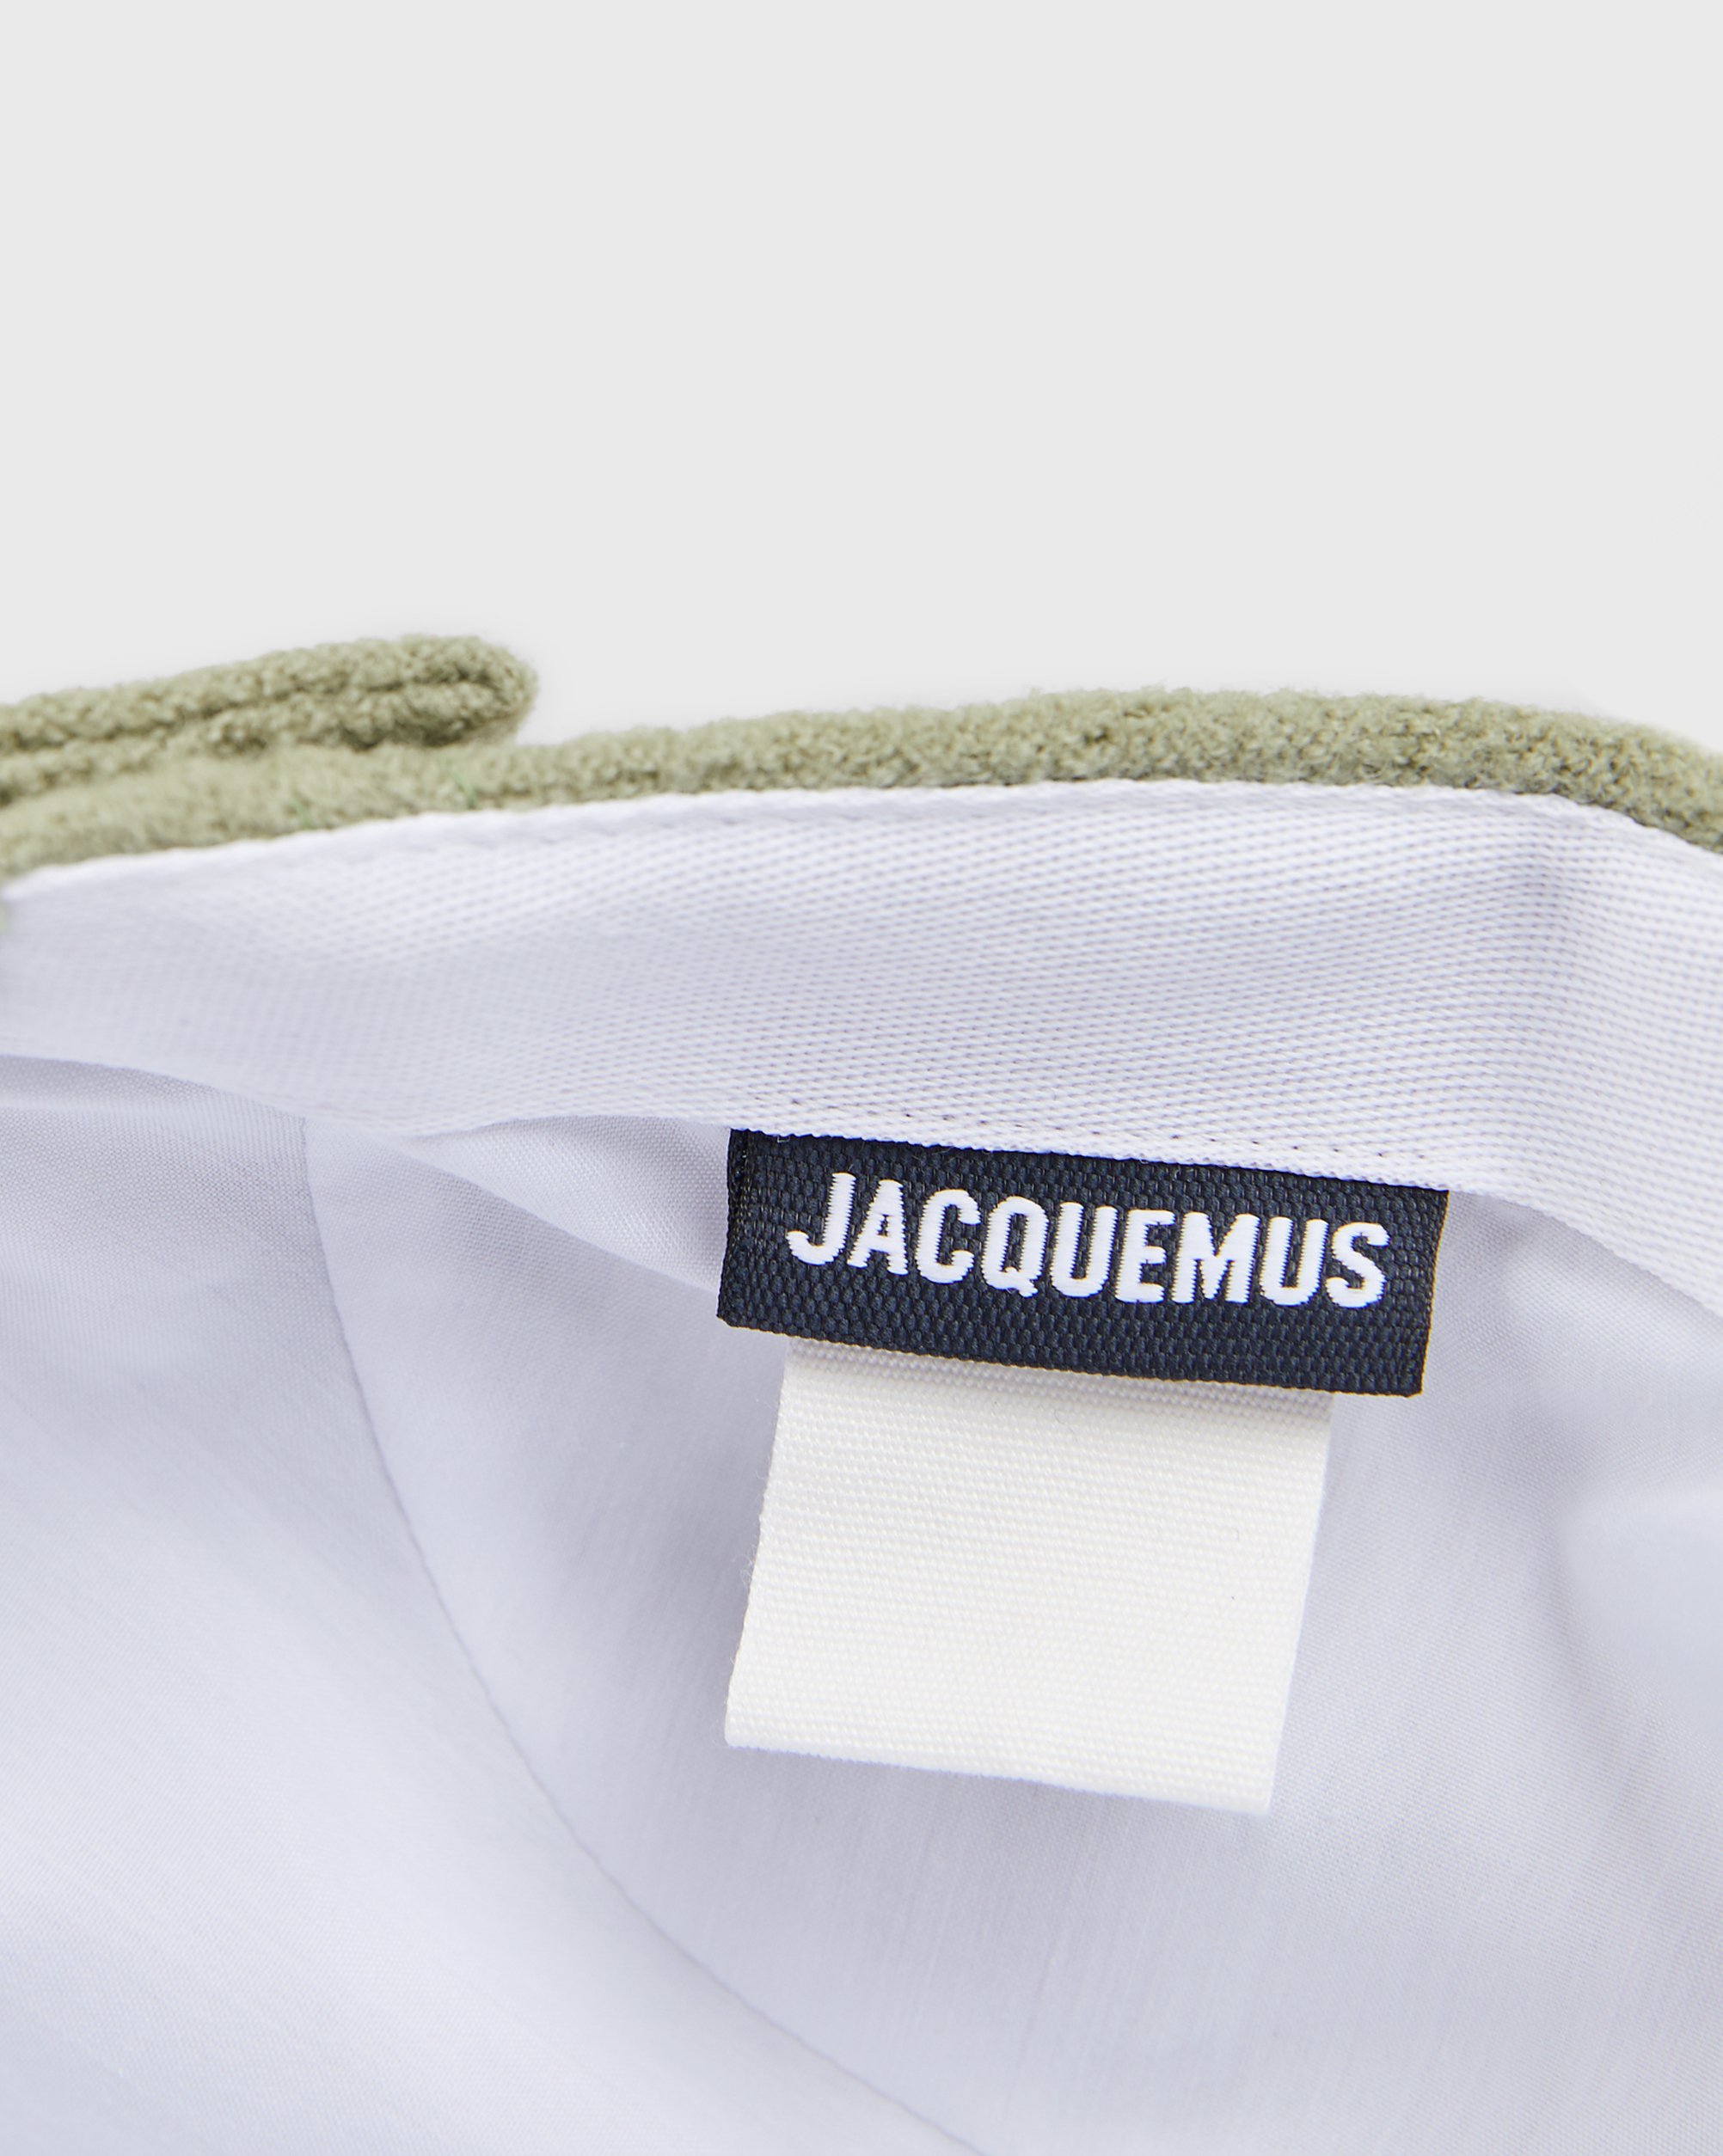 JACQUEMUS - La Casquette Jacquemus Dark Green - Accessories - Green - Image 4